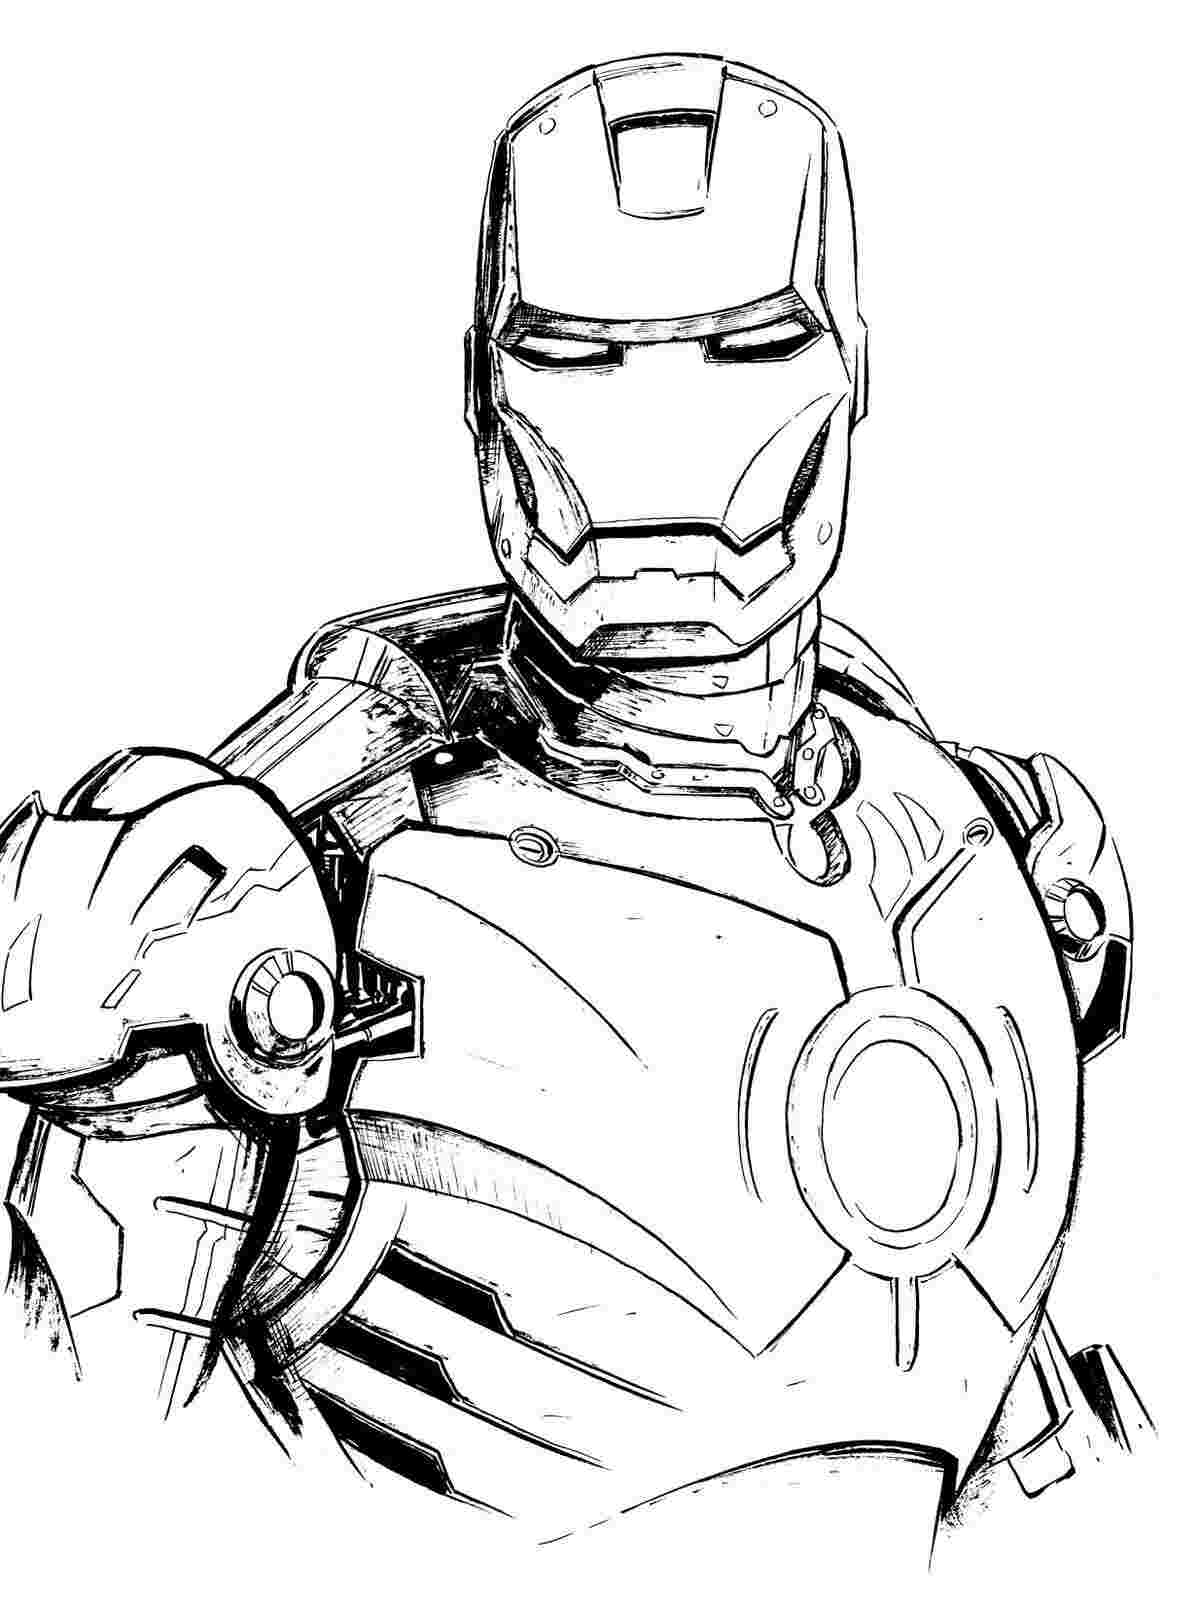 Horrible Iron Man-Rüstung hat einen mächtigen Kreis auf der Brust Malvorlagen